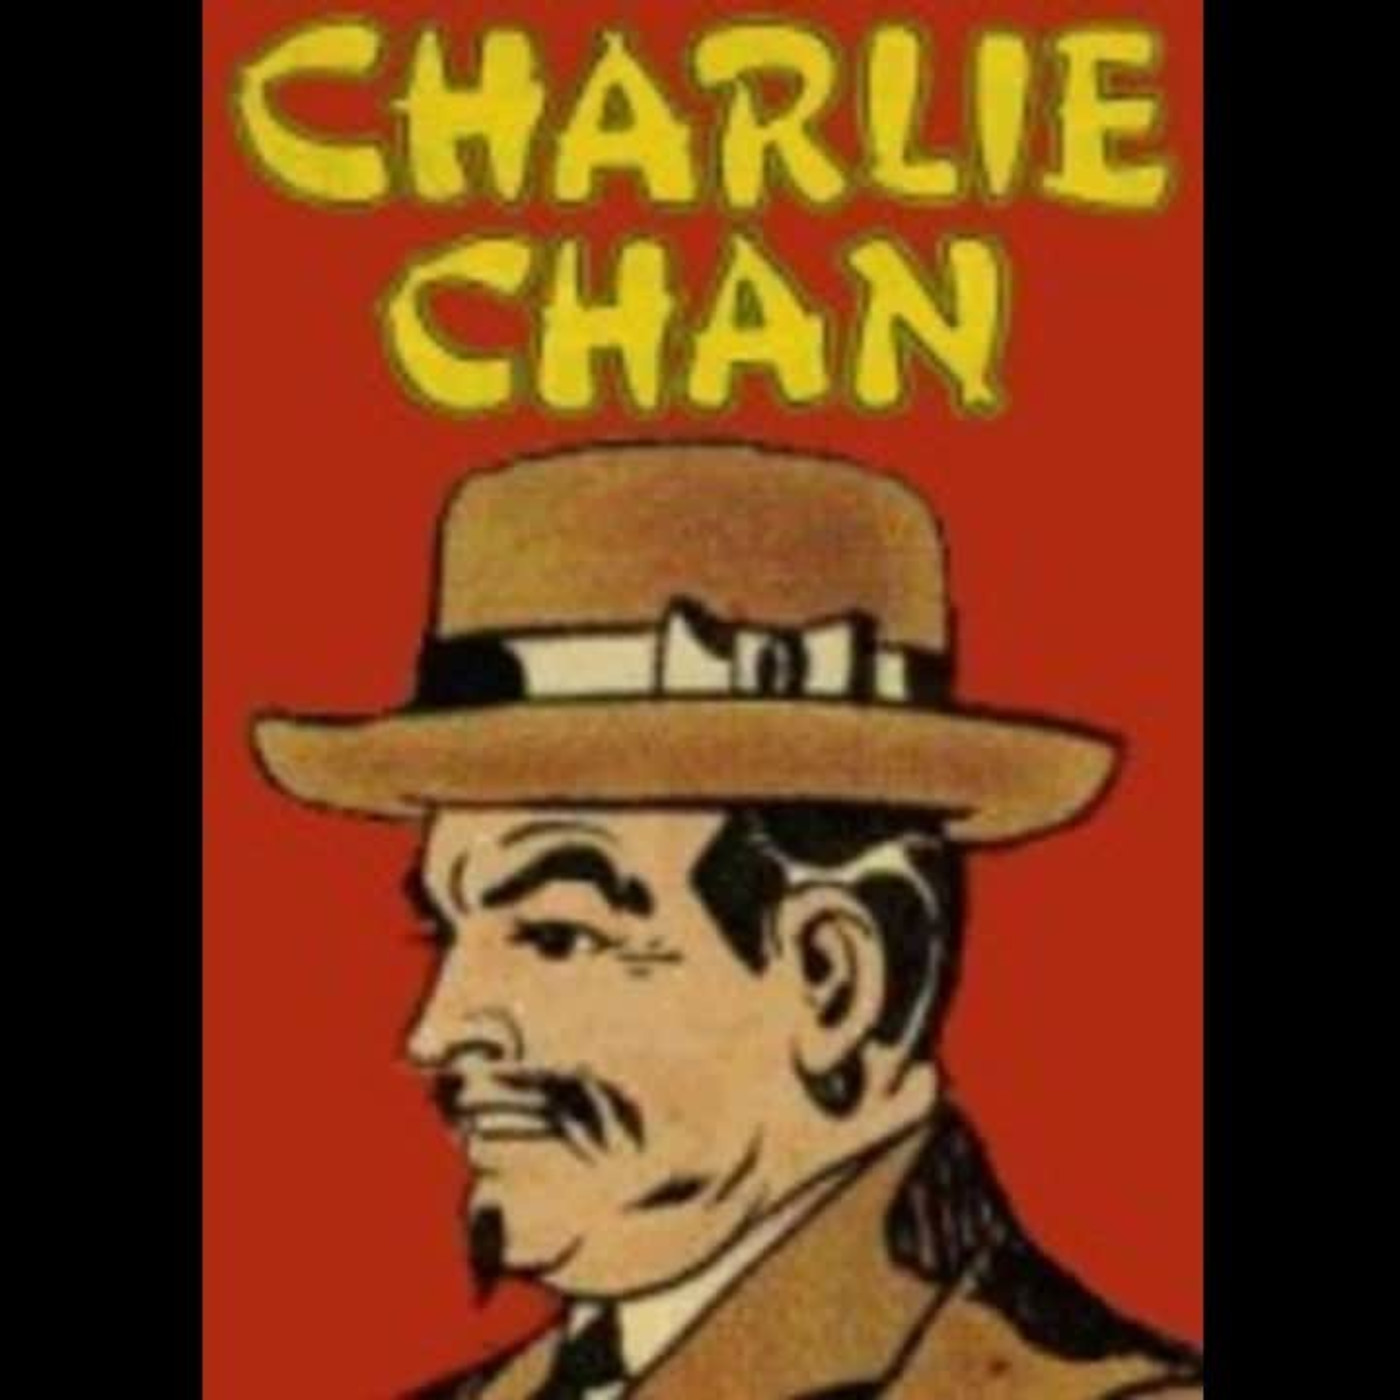 Charlie Chan - Fiery Santa Claus